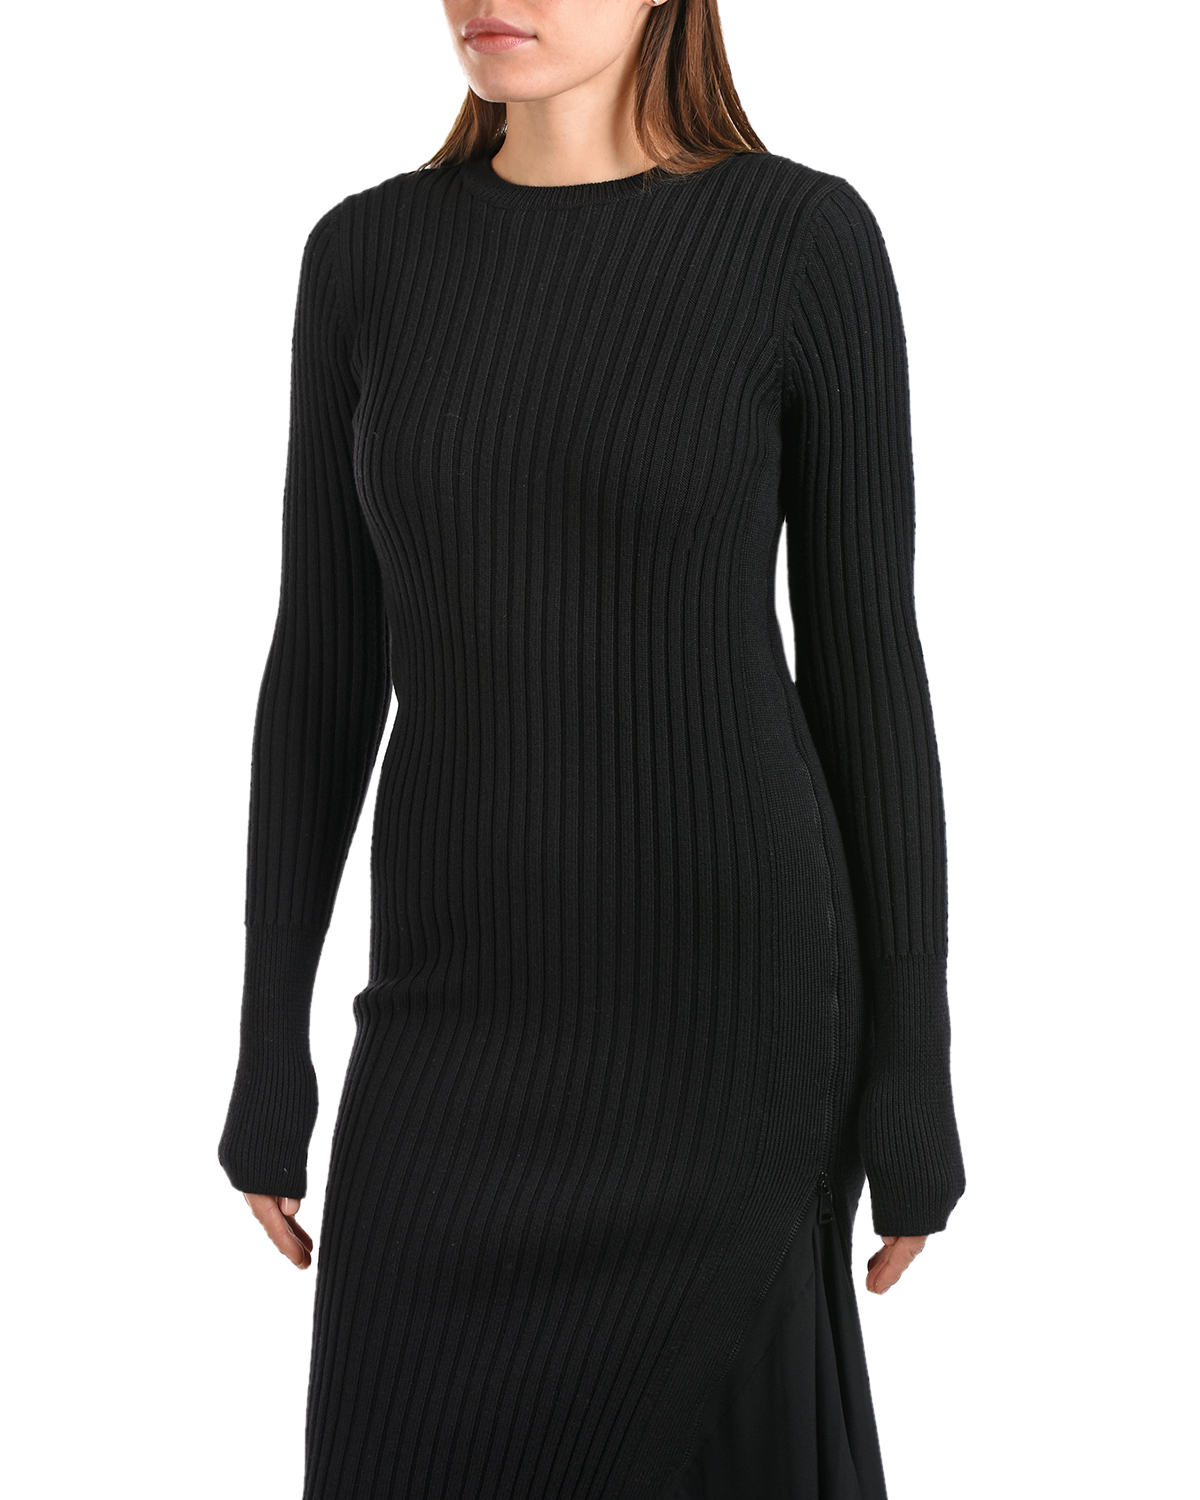 Черное платье 2 в 1 No. 21, размер 42, цвет черный - фото 8